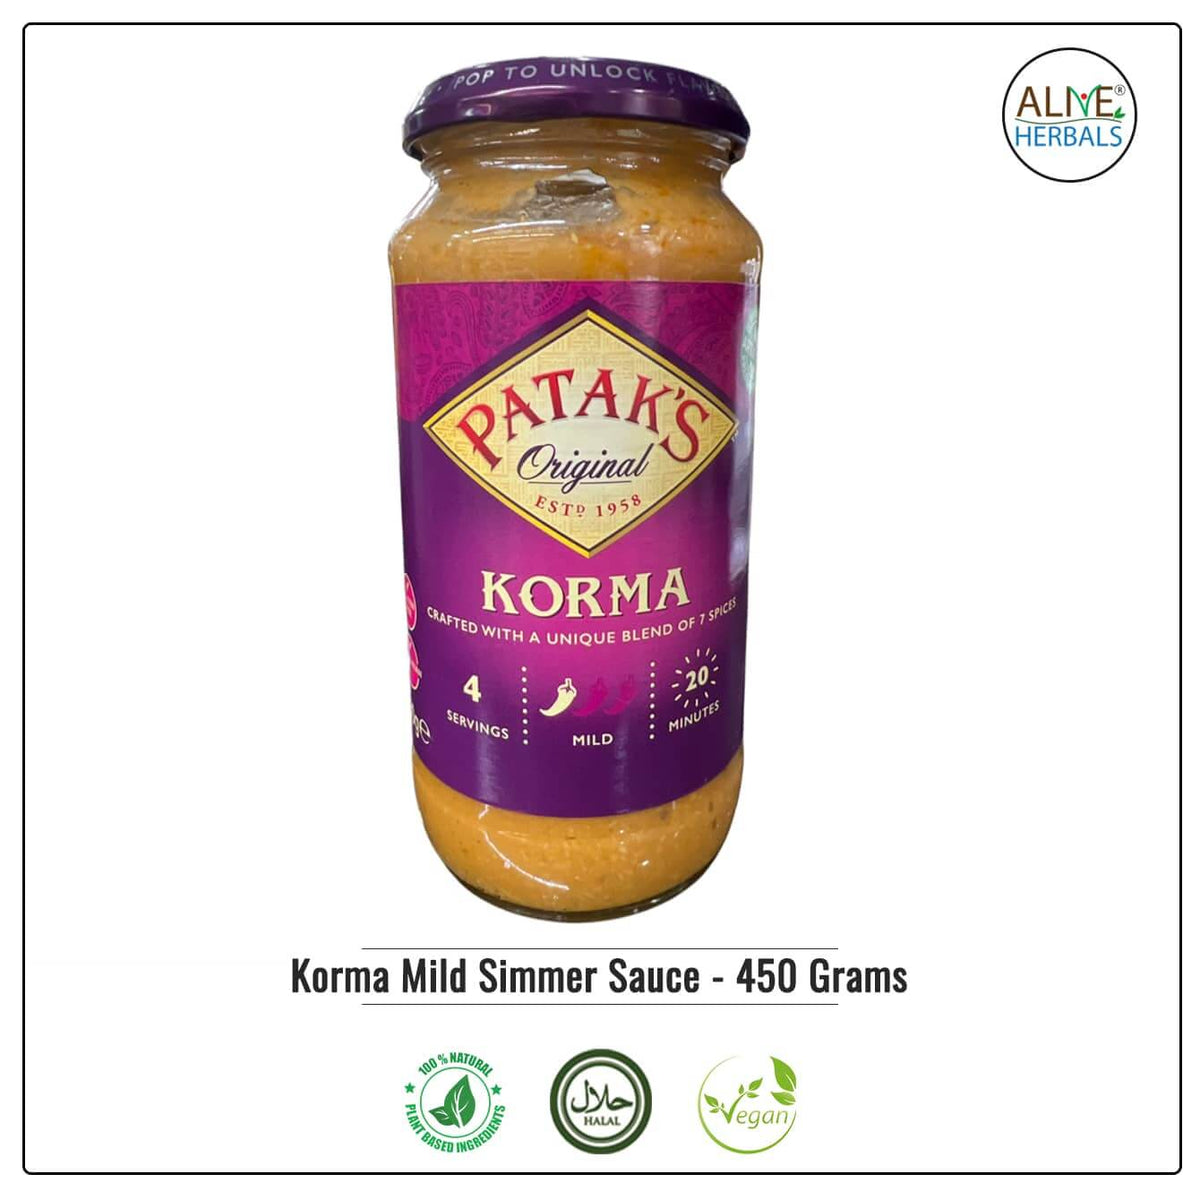 Korma Mild Simmer Sauce - Alive Herbals